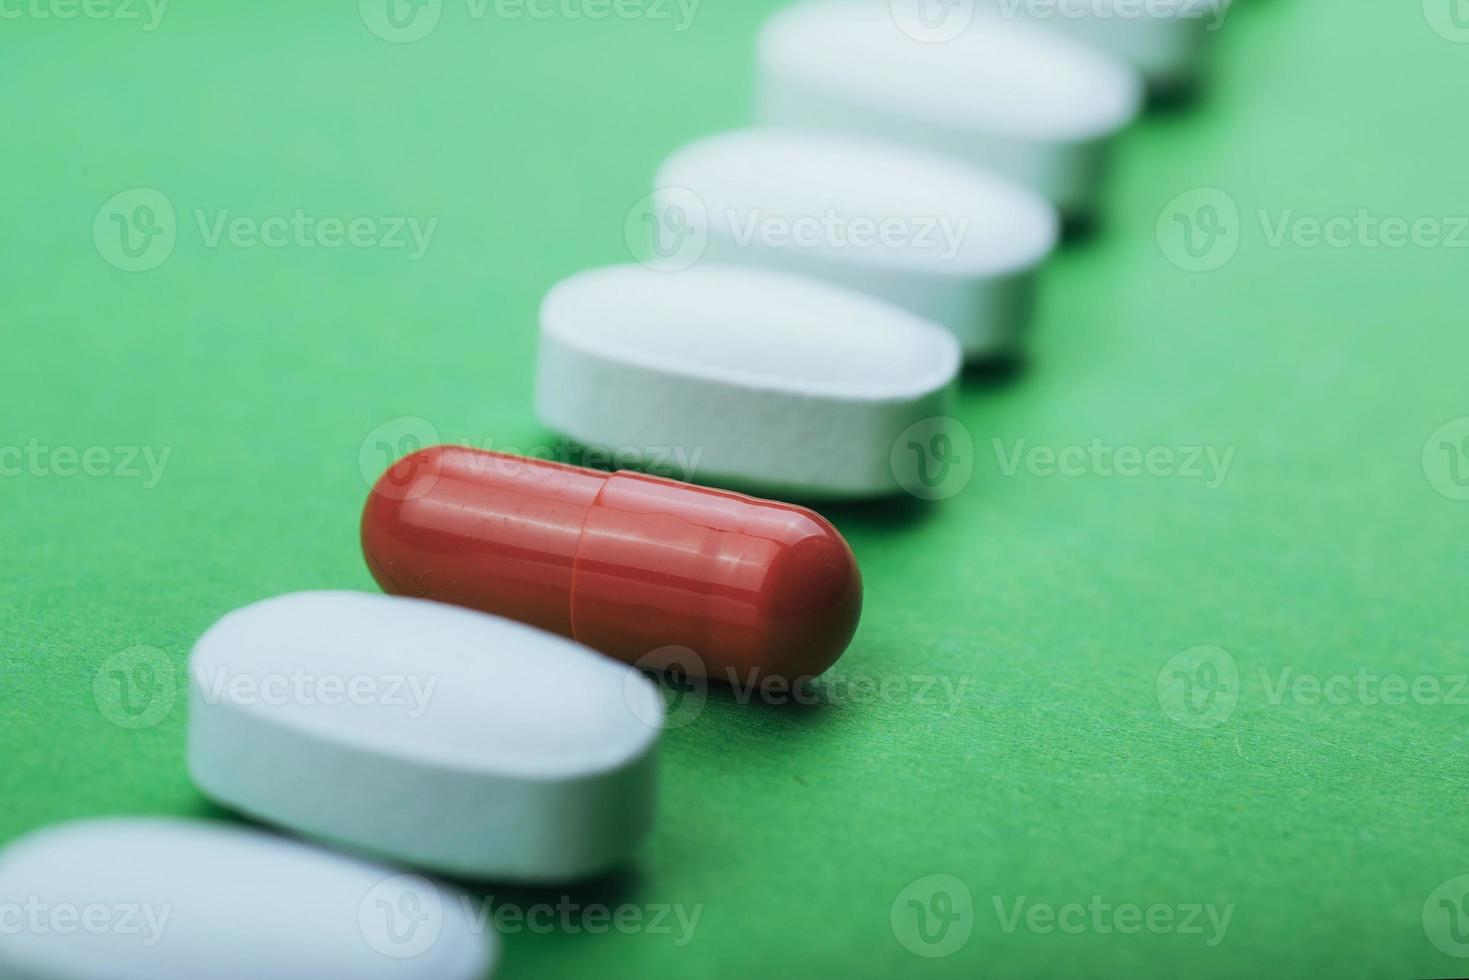 medizinische weiße pillen und braune kapseln für die behandlung und gesundheitsversorgung auf grünem hintergrund foto